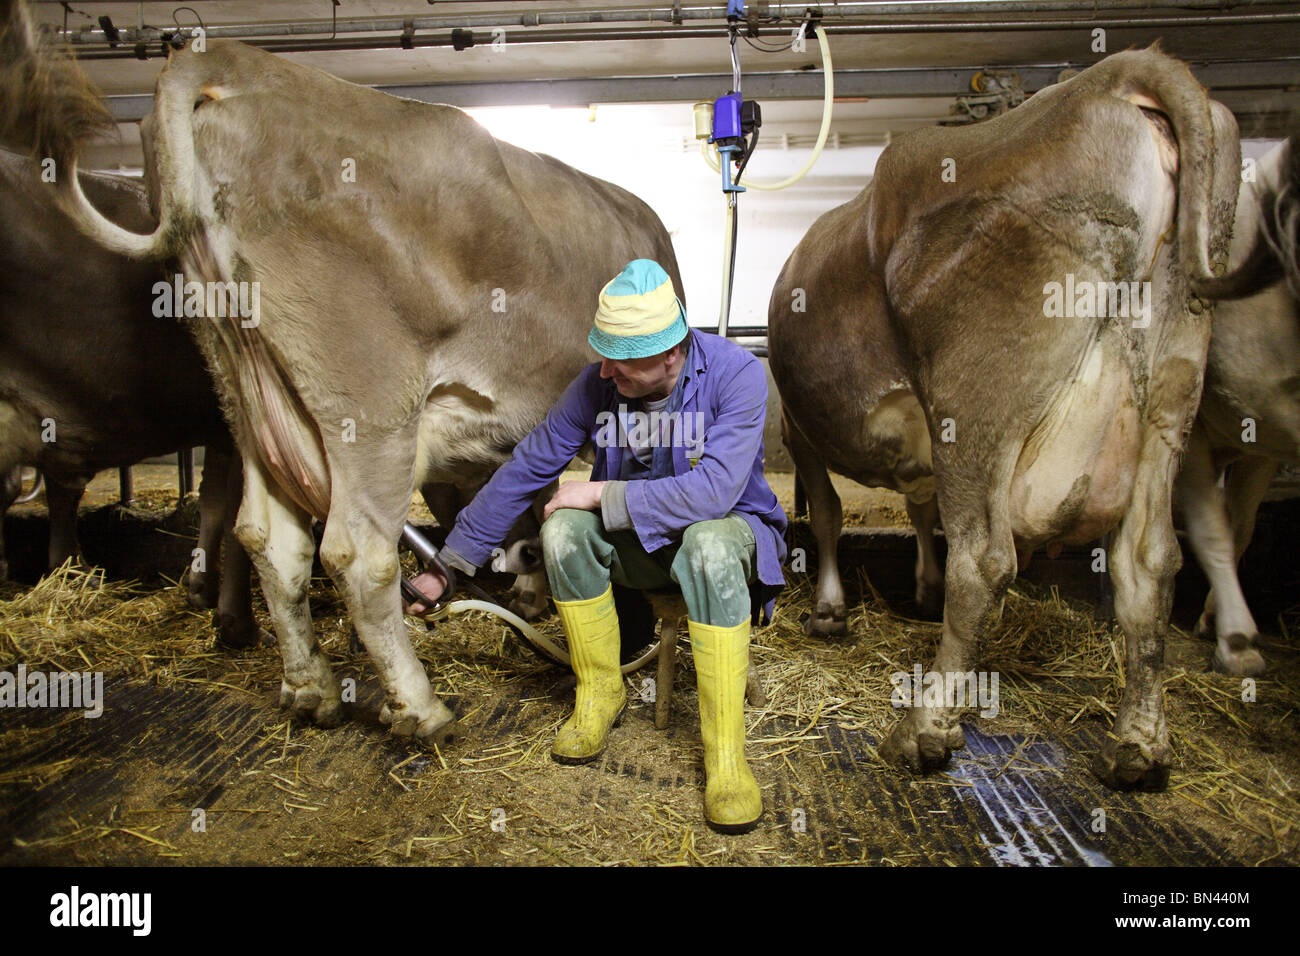 El agricultor pone una máquina de ordeño de la ubre de una vaca, Jerzens, Austria Foto de stock